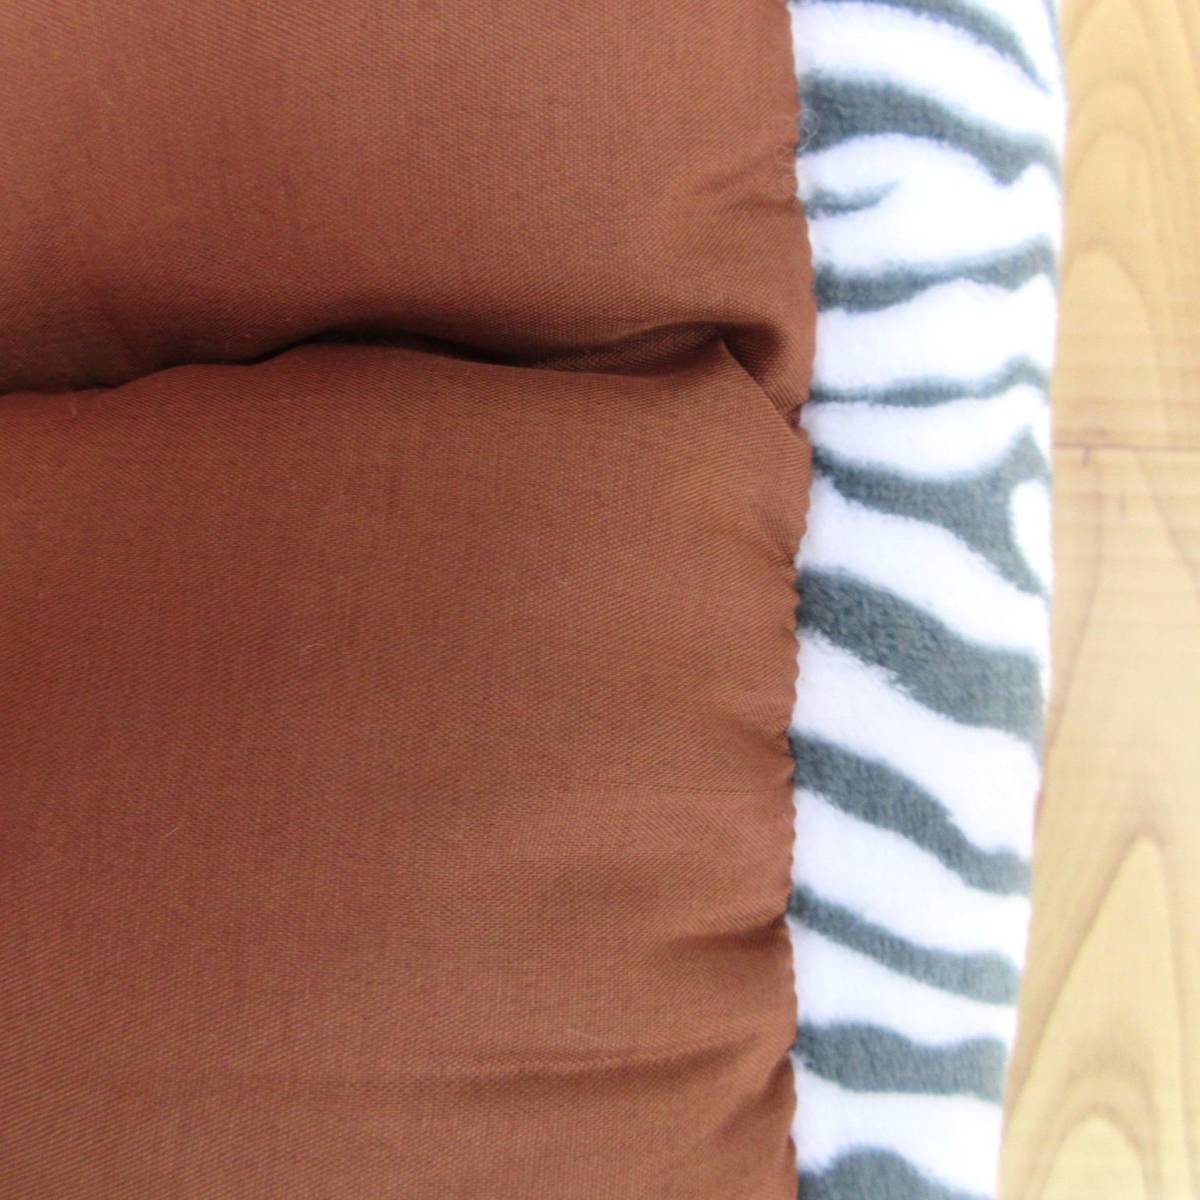  цена снижена! новый товар L размер фланель квадратное домашнее животное bed * домашнее животное диван Zebra рисунок серый коврик круг мытье мягкость теплый 